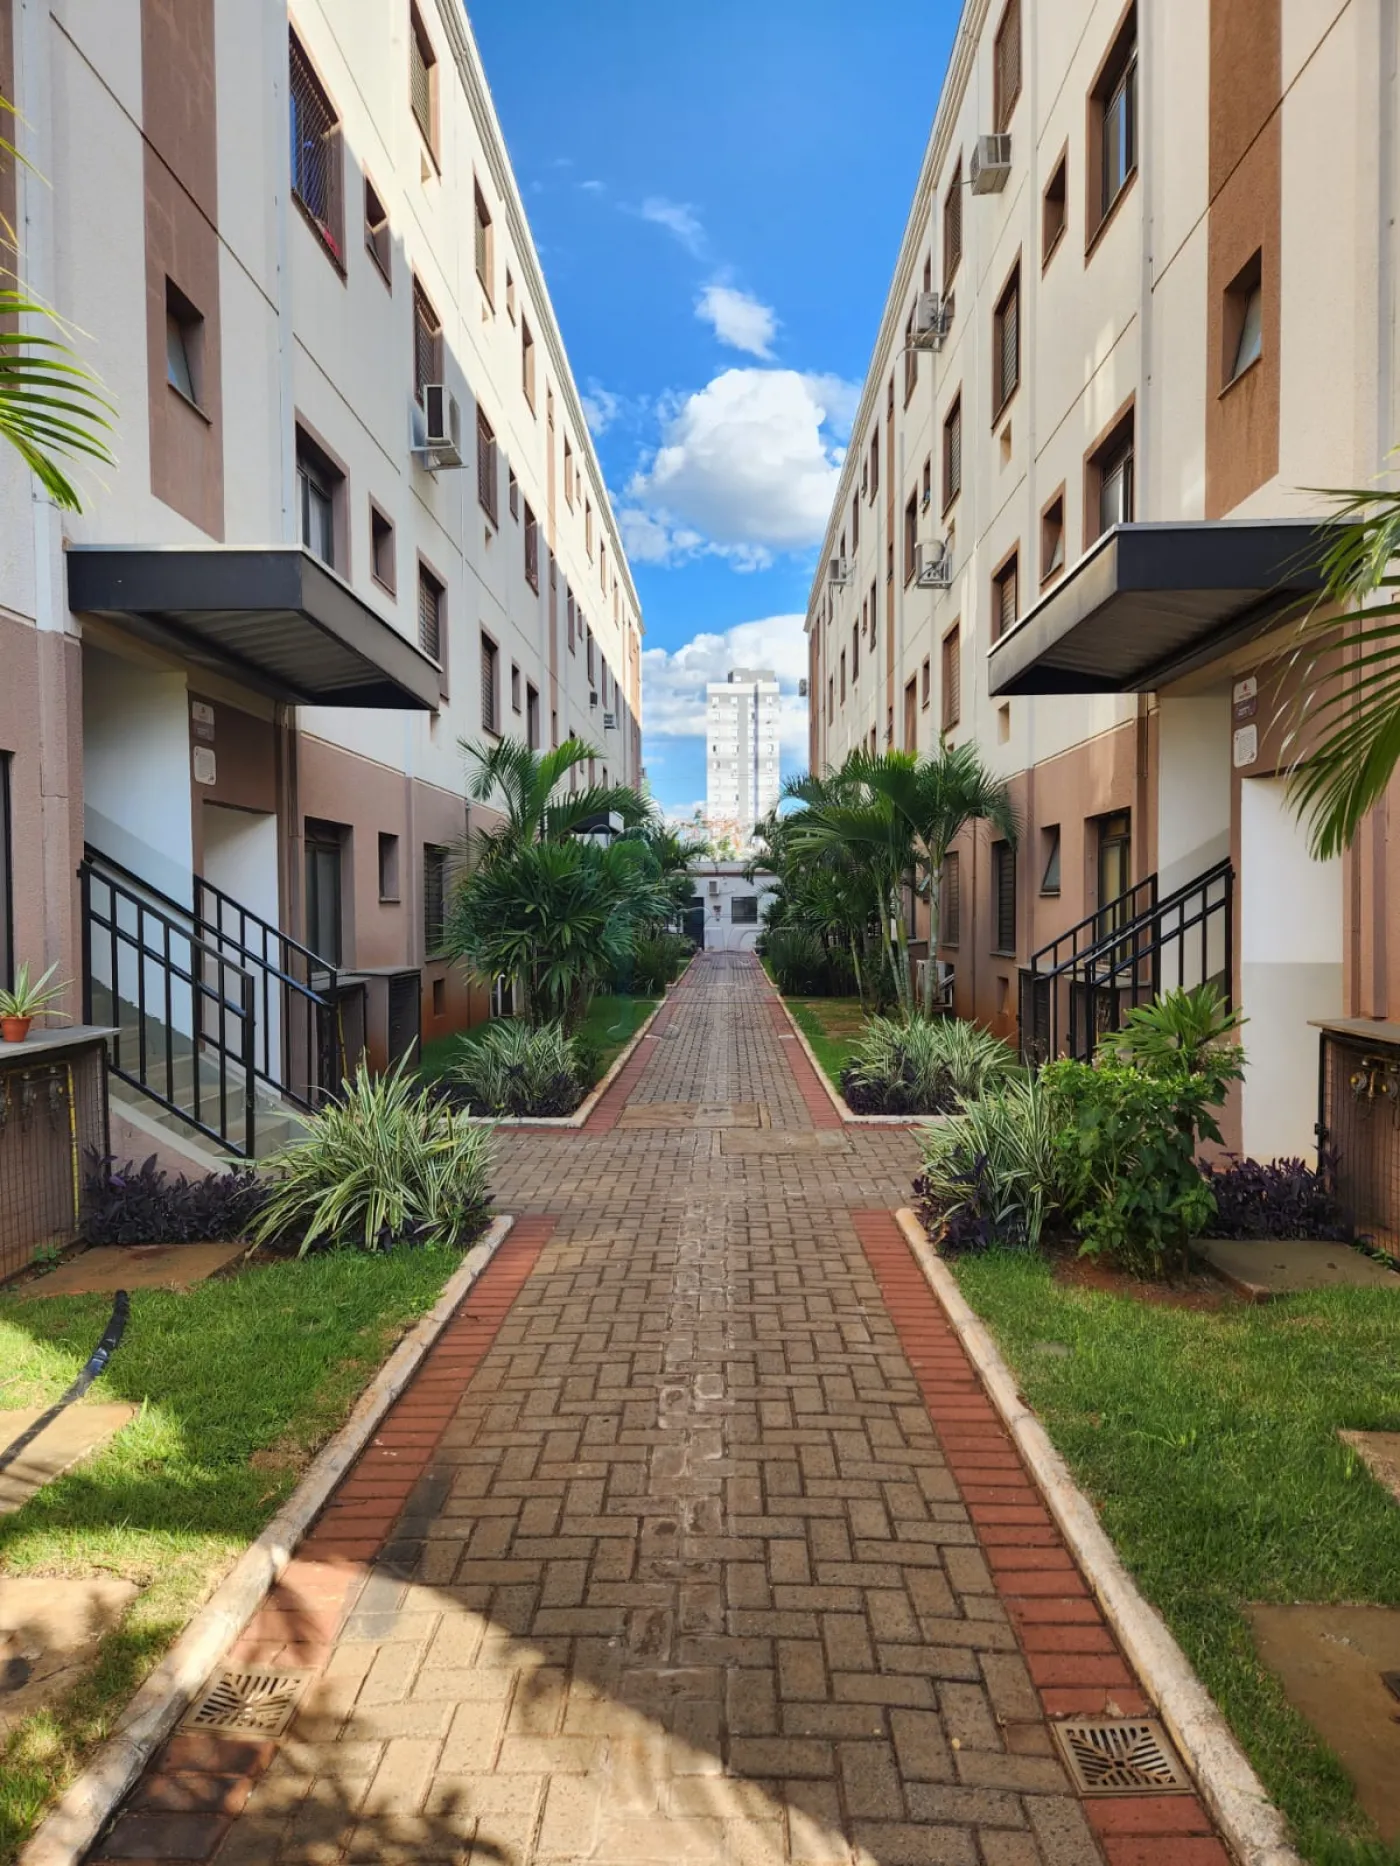 Alugar Apartamentos / Padrão em Ribeirão Preto R$ 850,00 - Foto 23